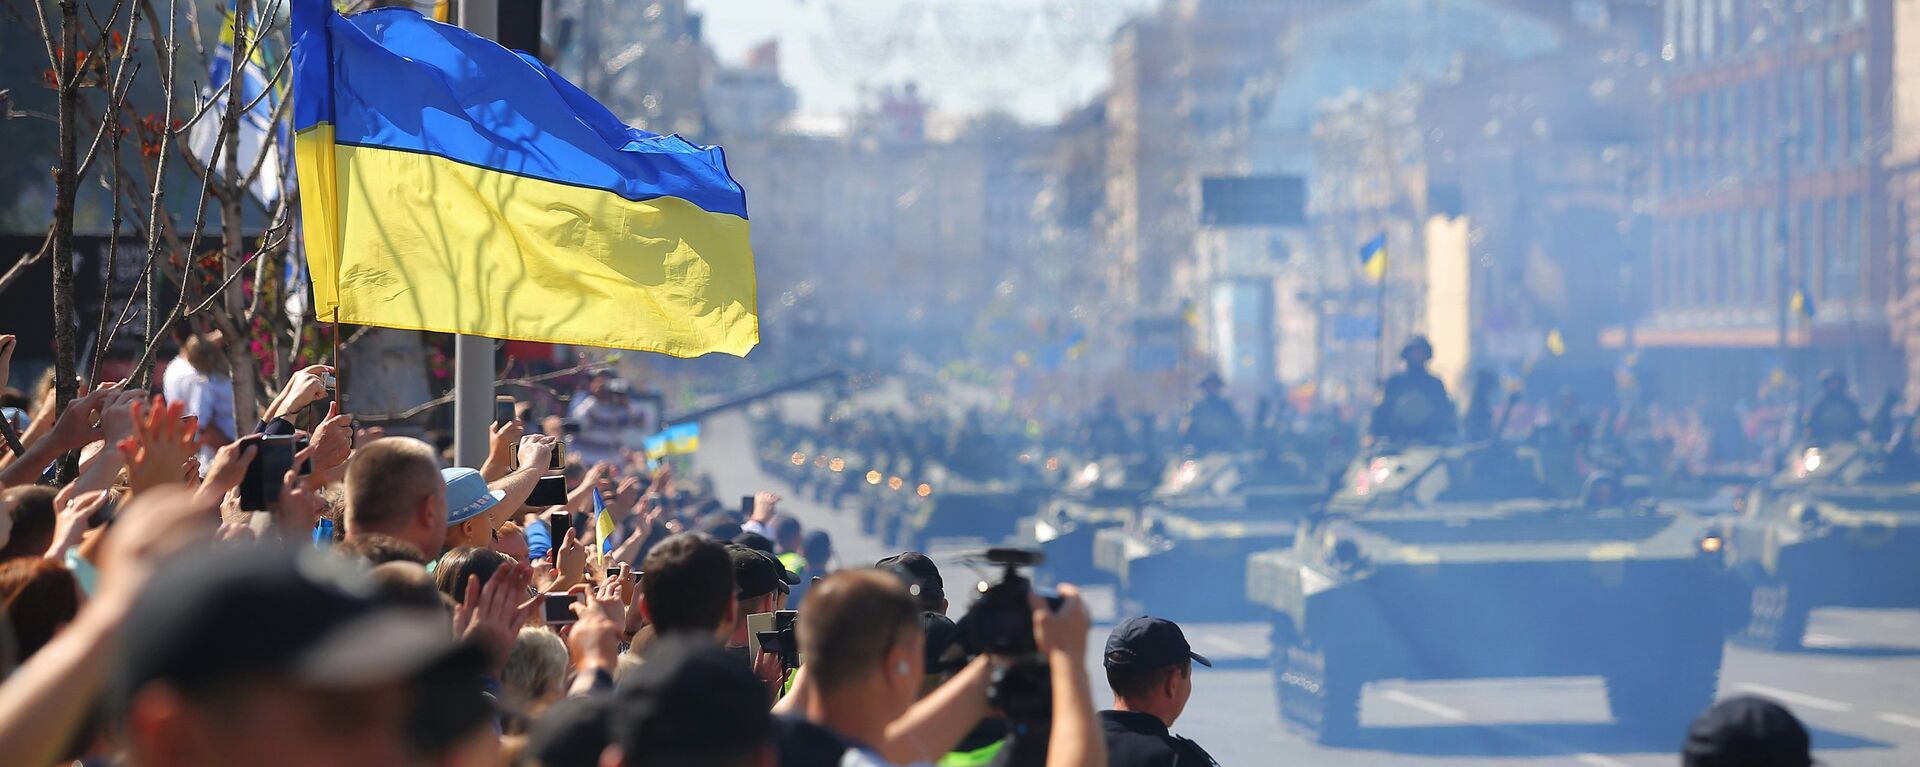 Военный парад в Киеве ко Дню независимости Украины, архивное фото - Sputnik Қазақстан, 1920, 18.08.2021